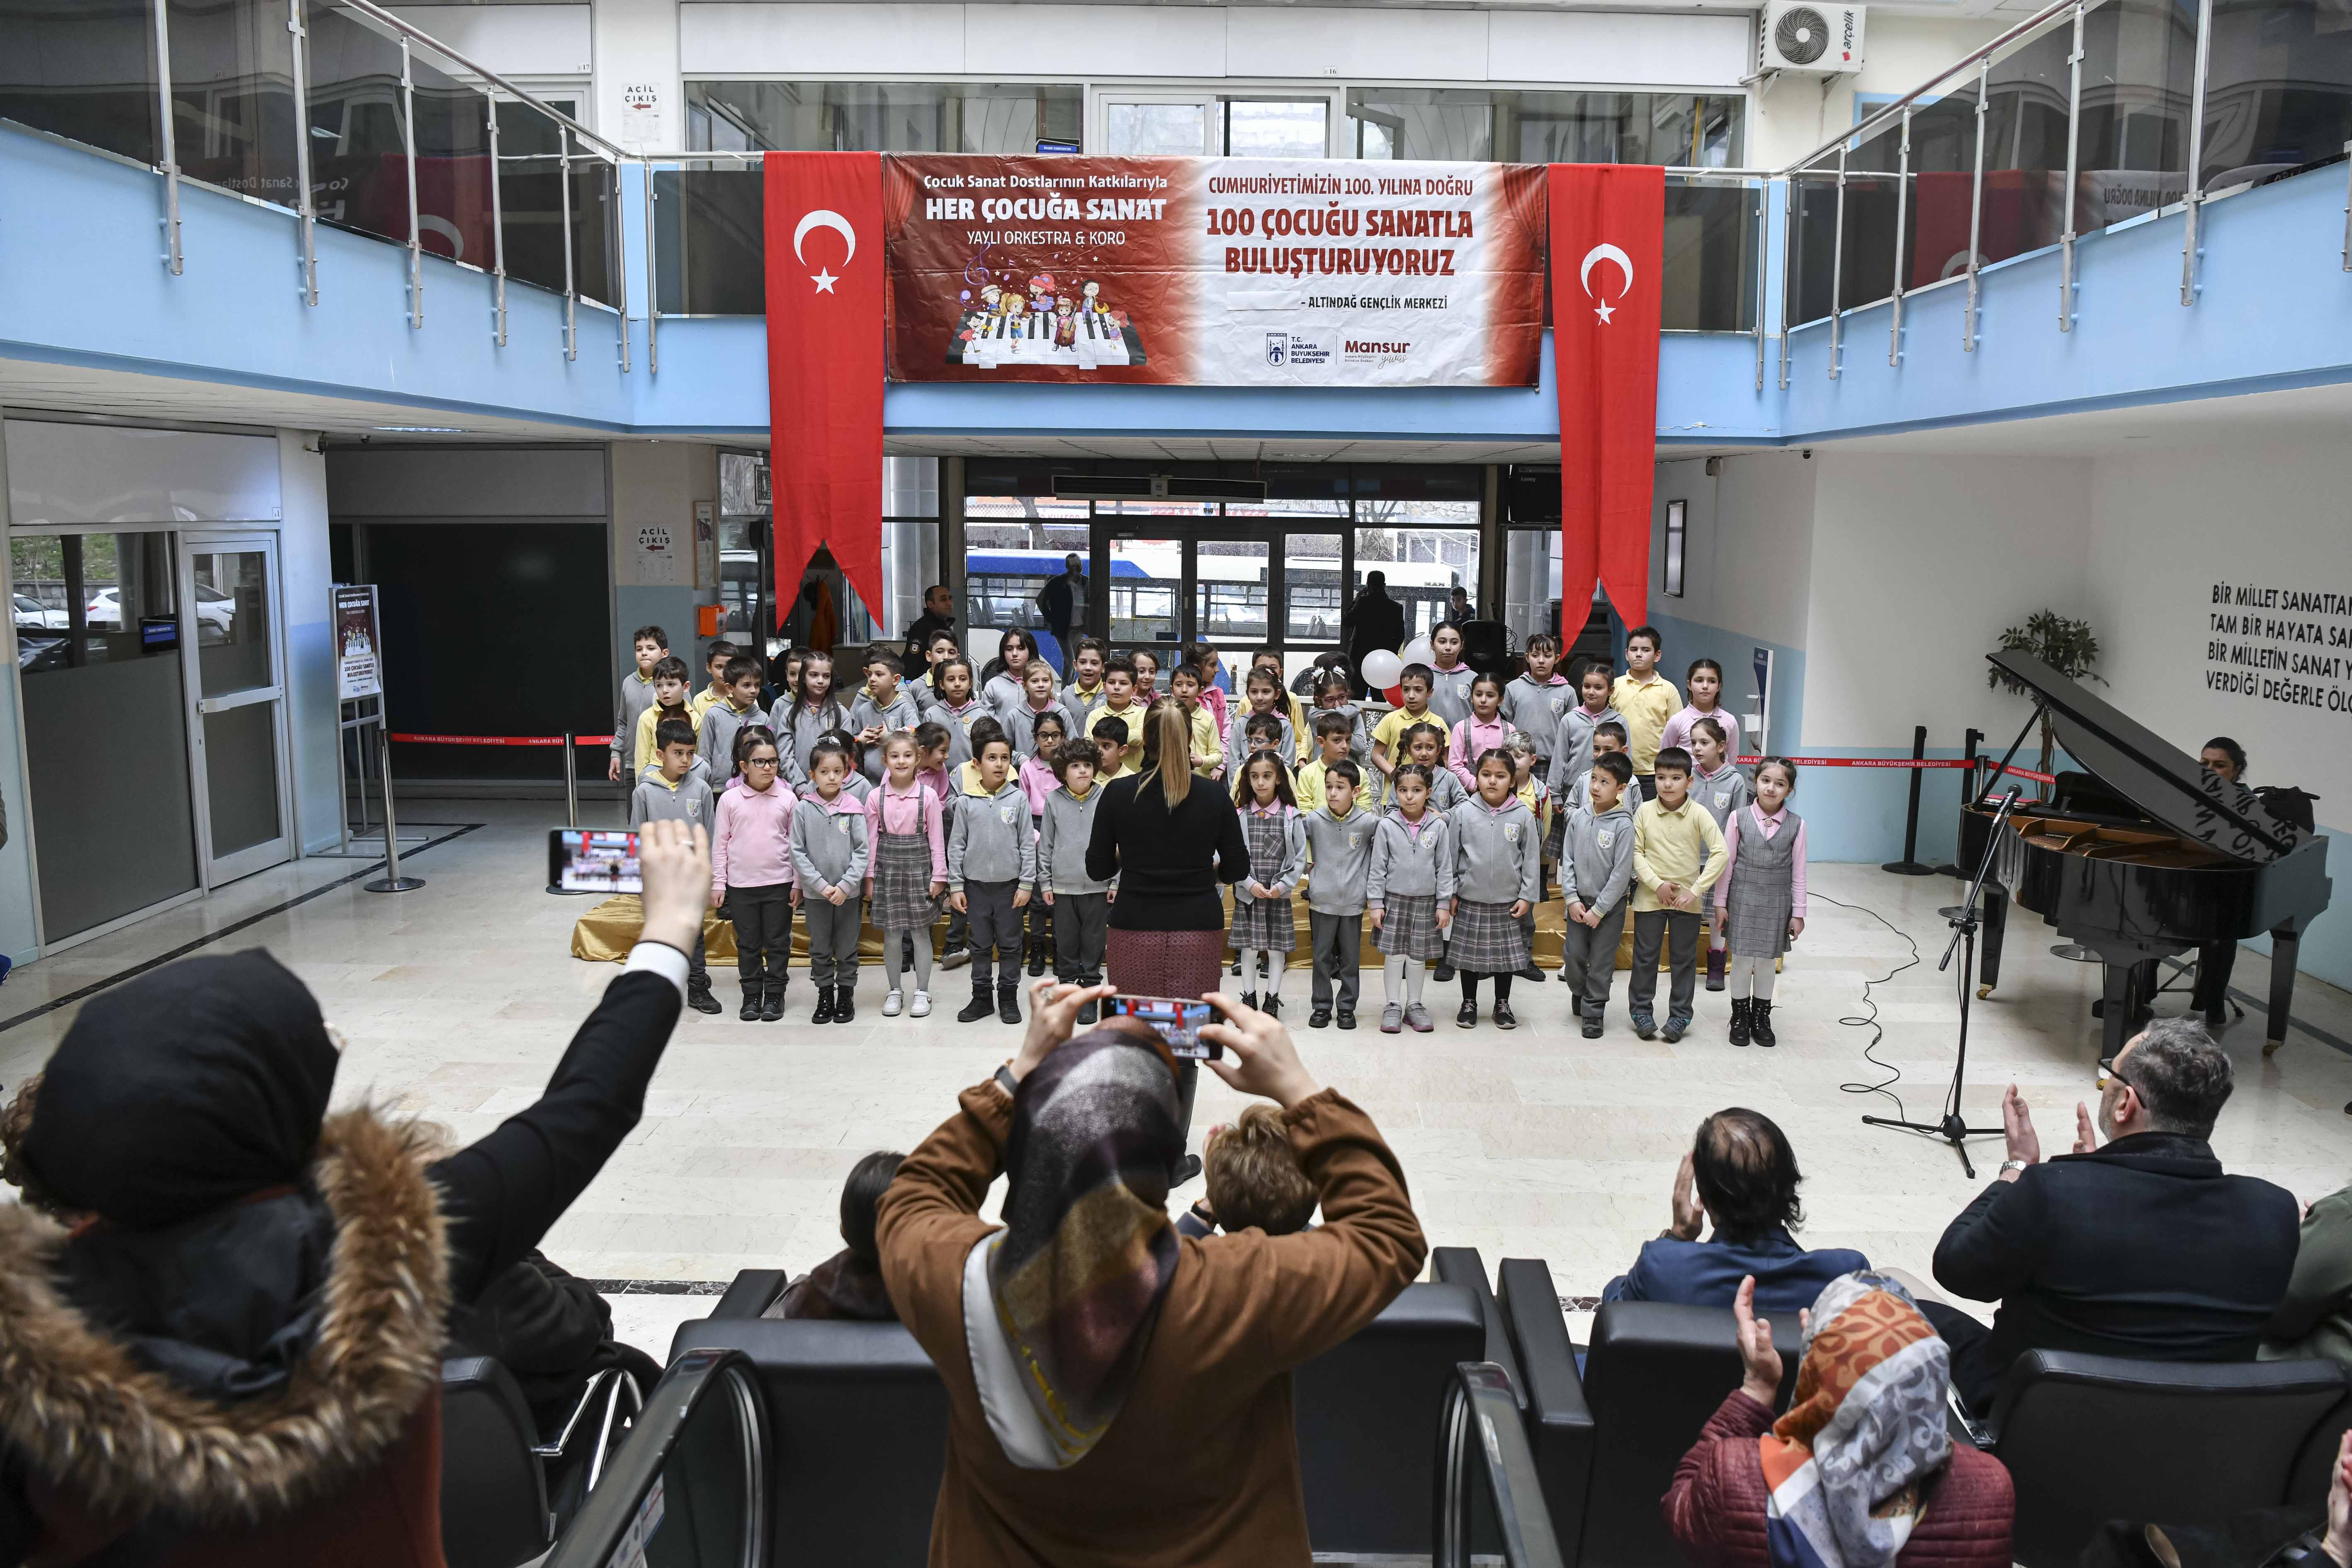 Ankara Büyükşehir’in “Her Çocuğa Sanat” projesinde ilk konser heyecanı